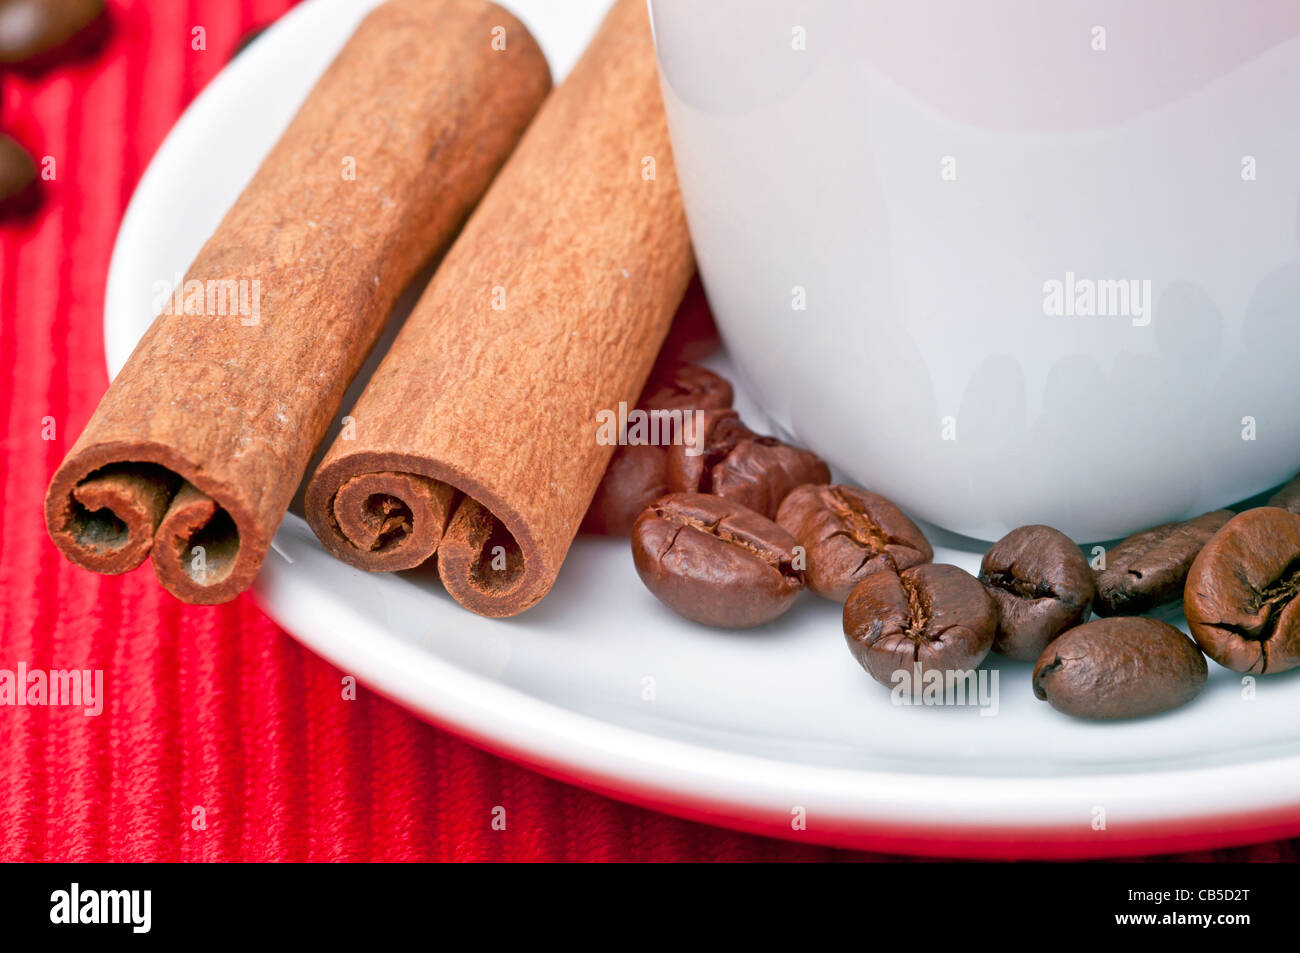 Tazza da caffè con cannella, granelli di caffè e un cucchiaio dal lato. Foto Stock